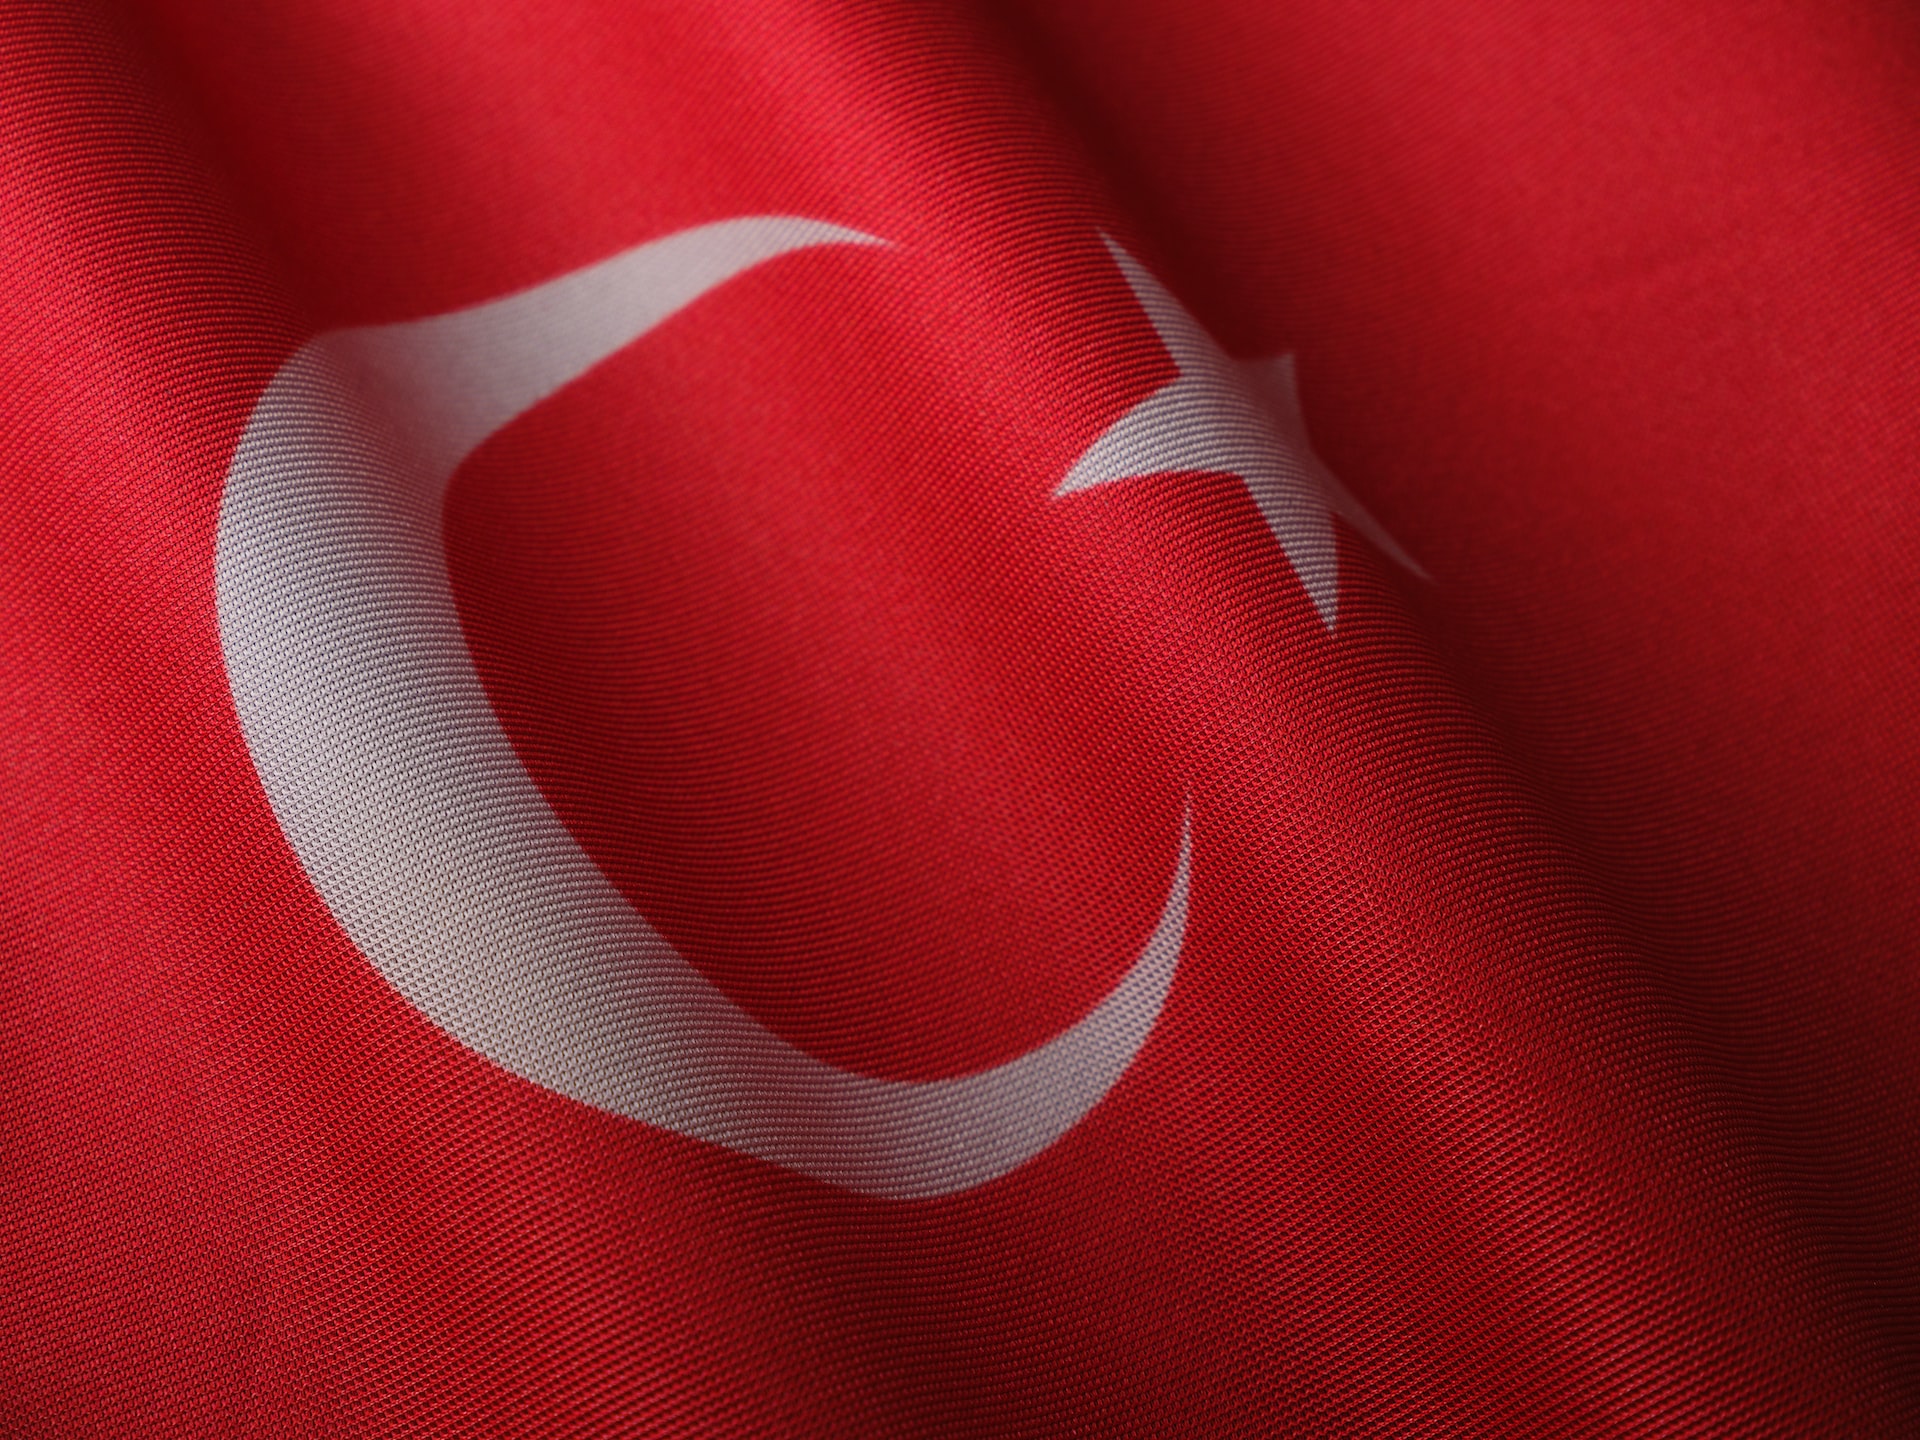 Турецкий транзит, перспективы энергетики в регионе